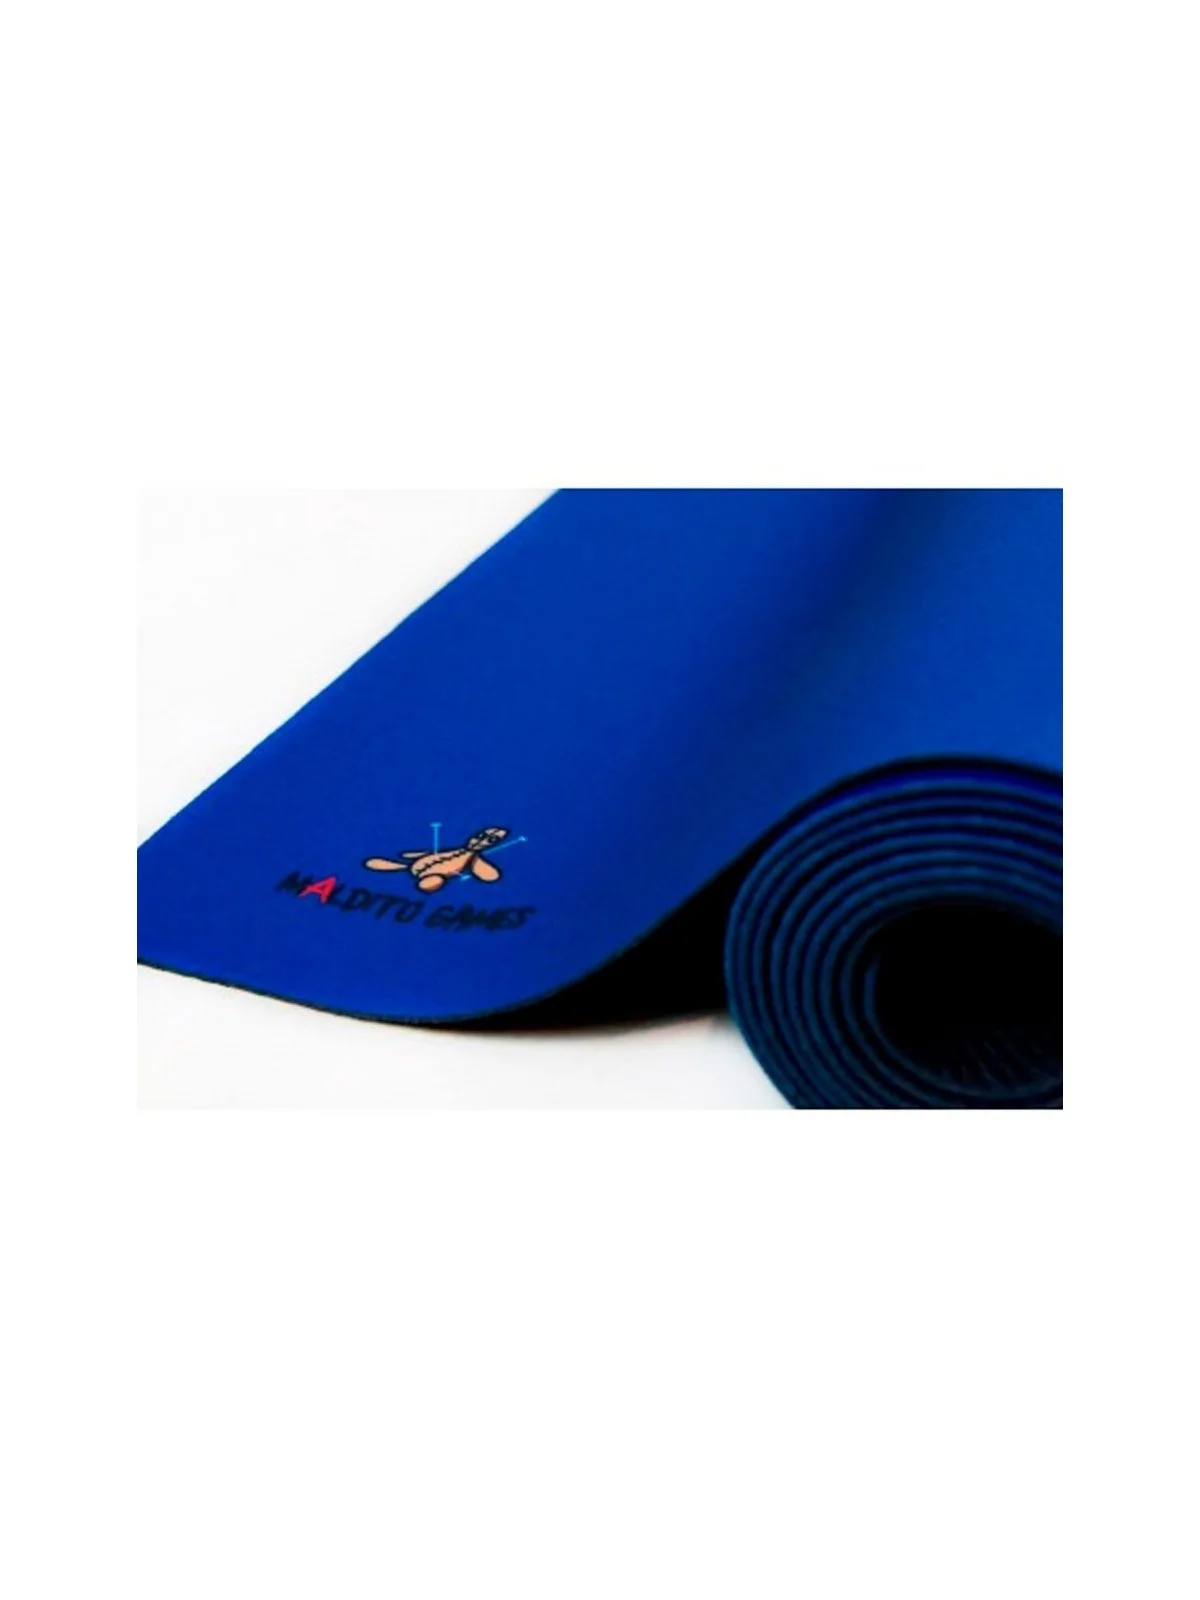 Comprar Tapete de Neopreno 140x80cm - Azul Liso barato al mejor precio